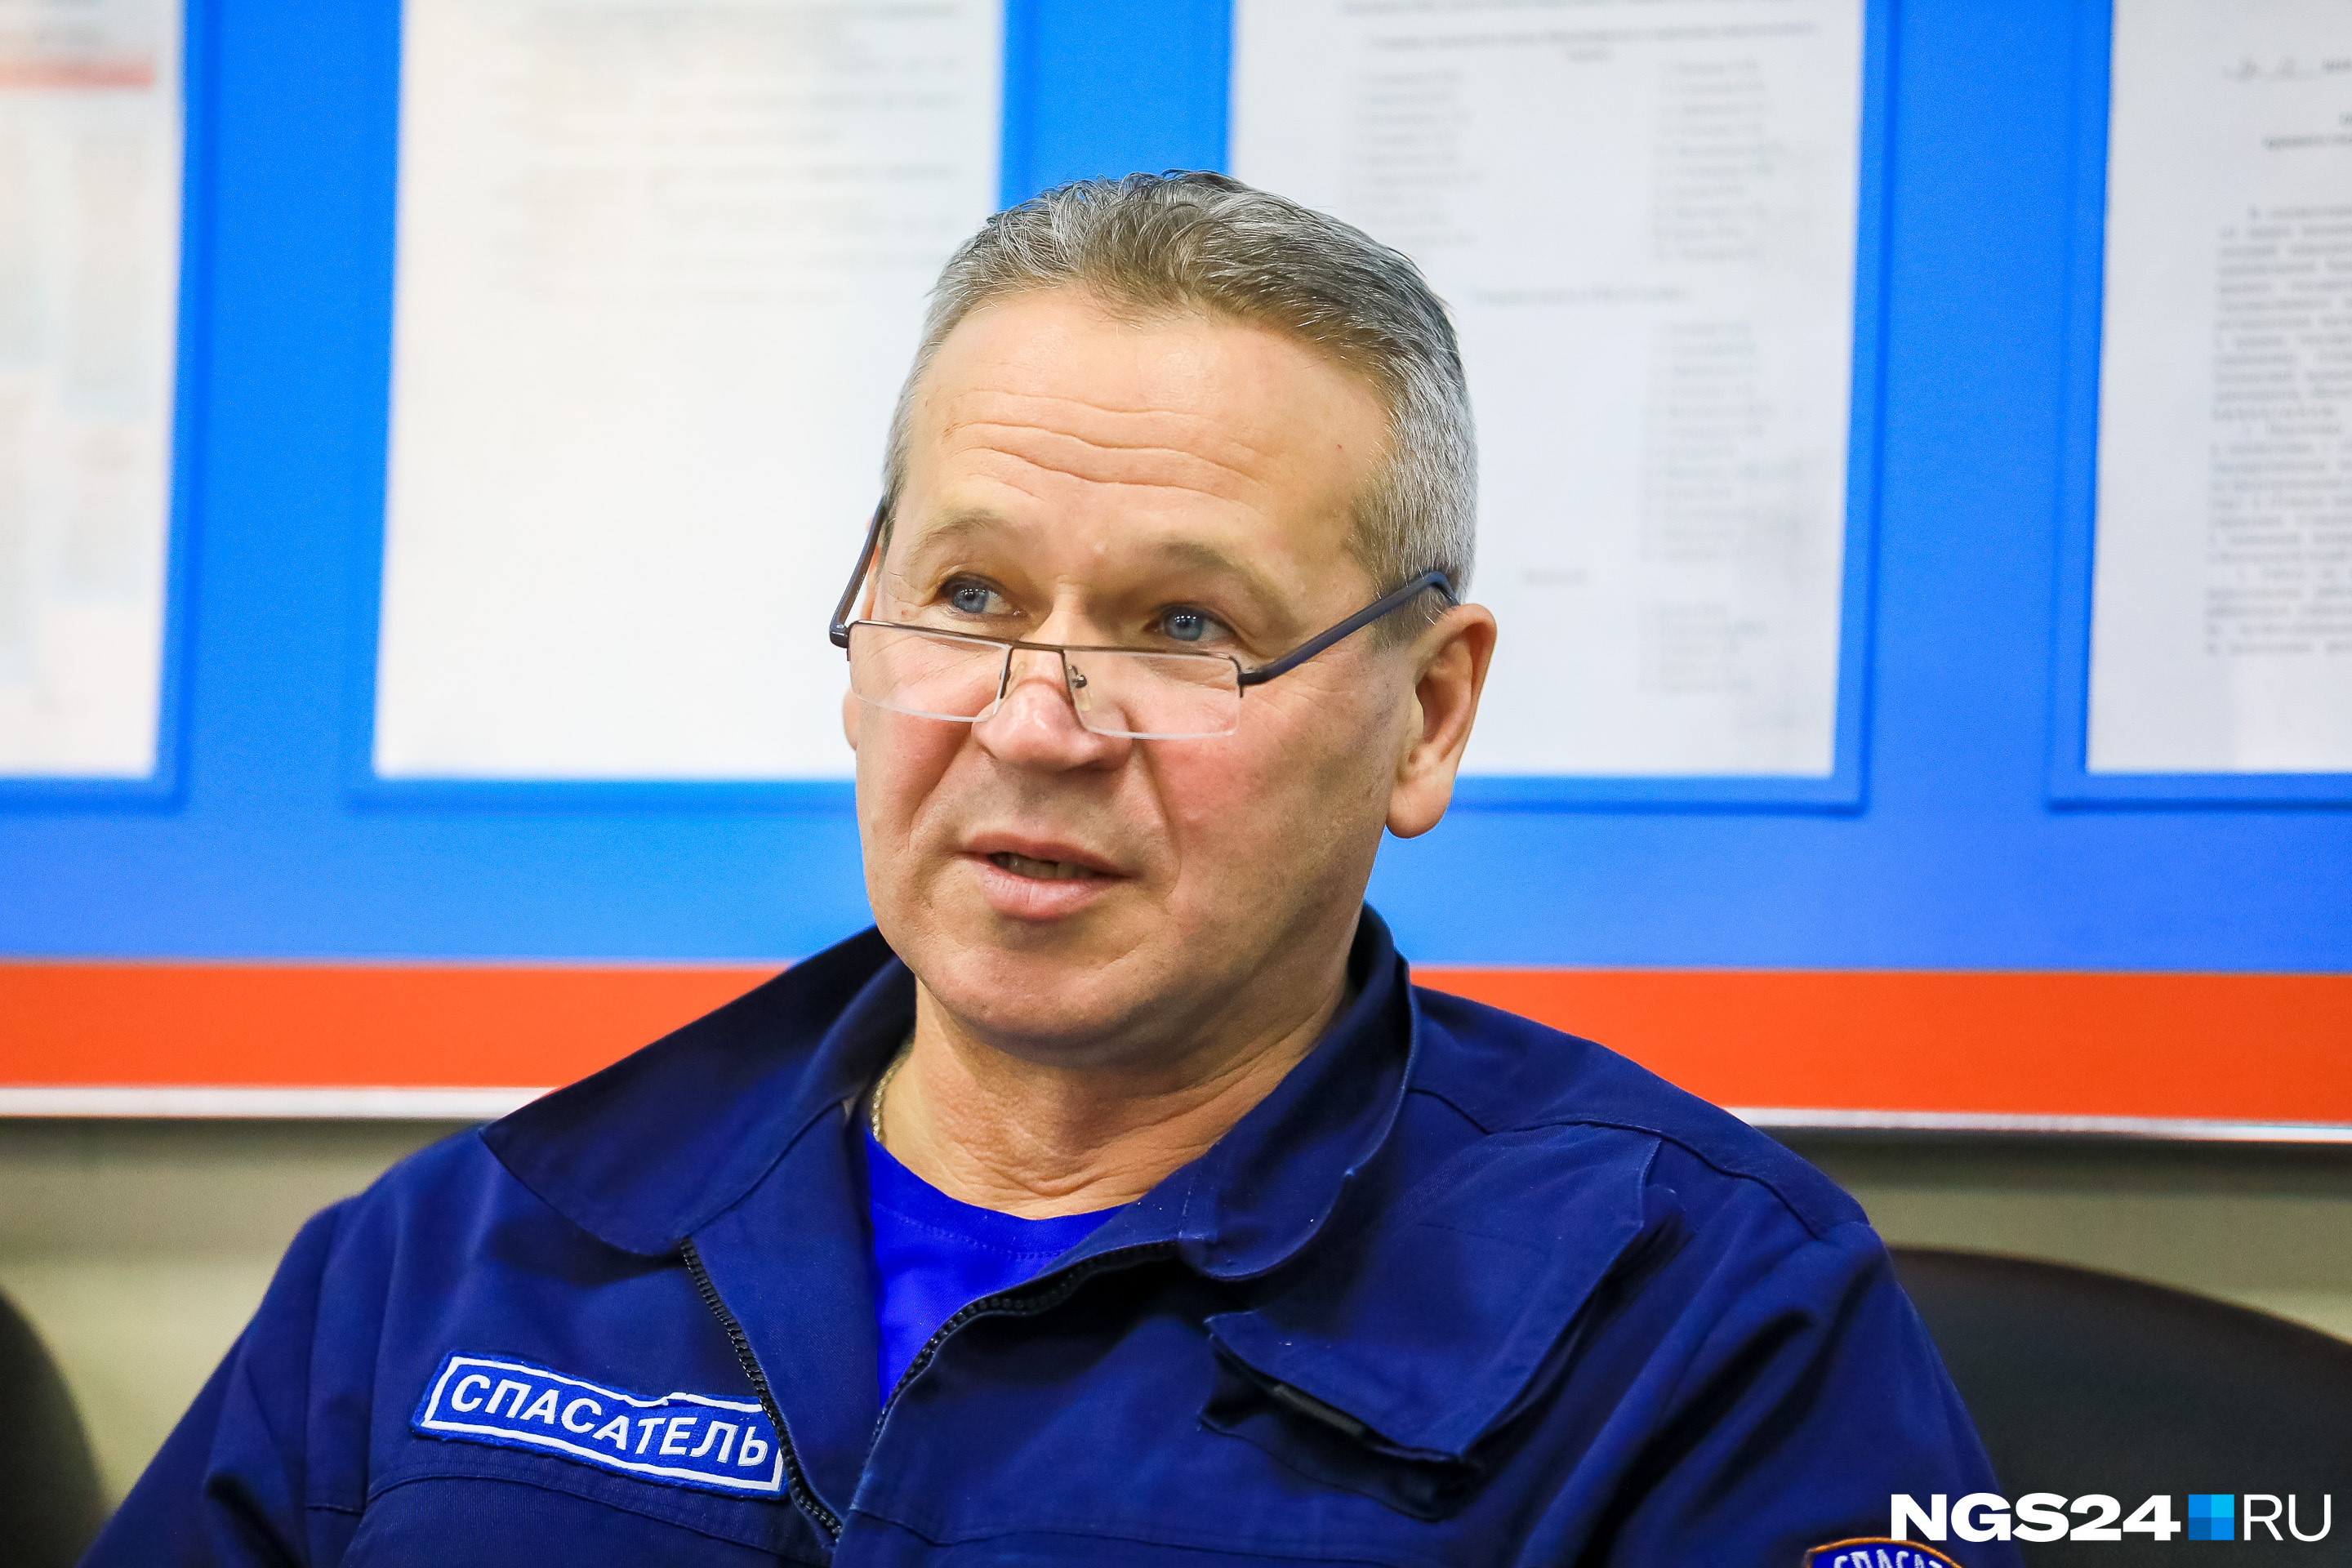 Дмитрий Тырцев — руководитель красноярского ПСО, он занимается координацией работы спасателей и сам выезжает на крупные ЧС